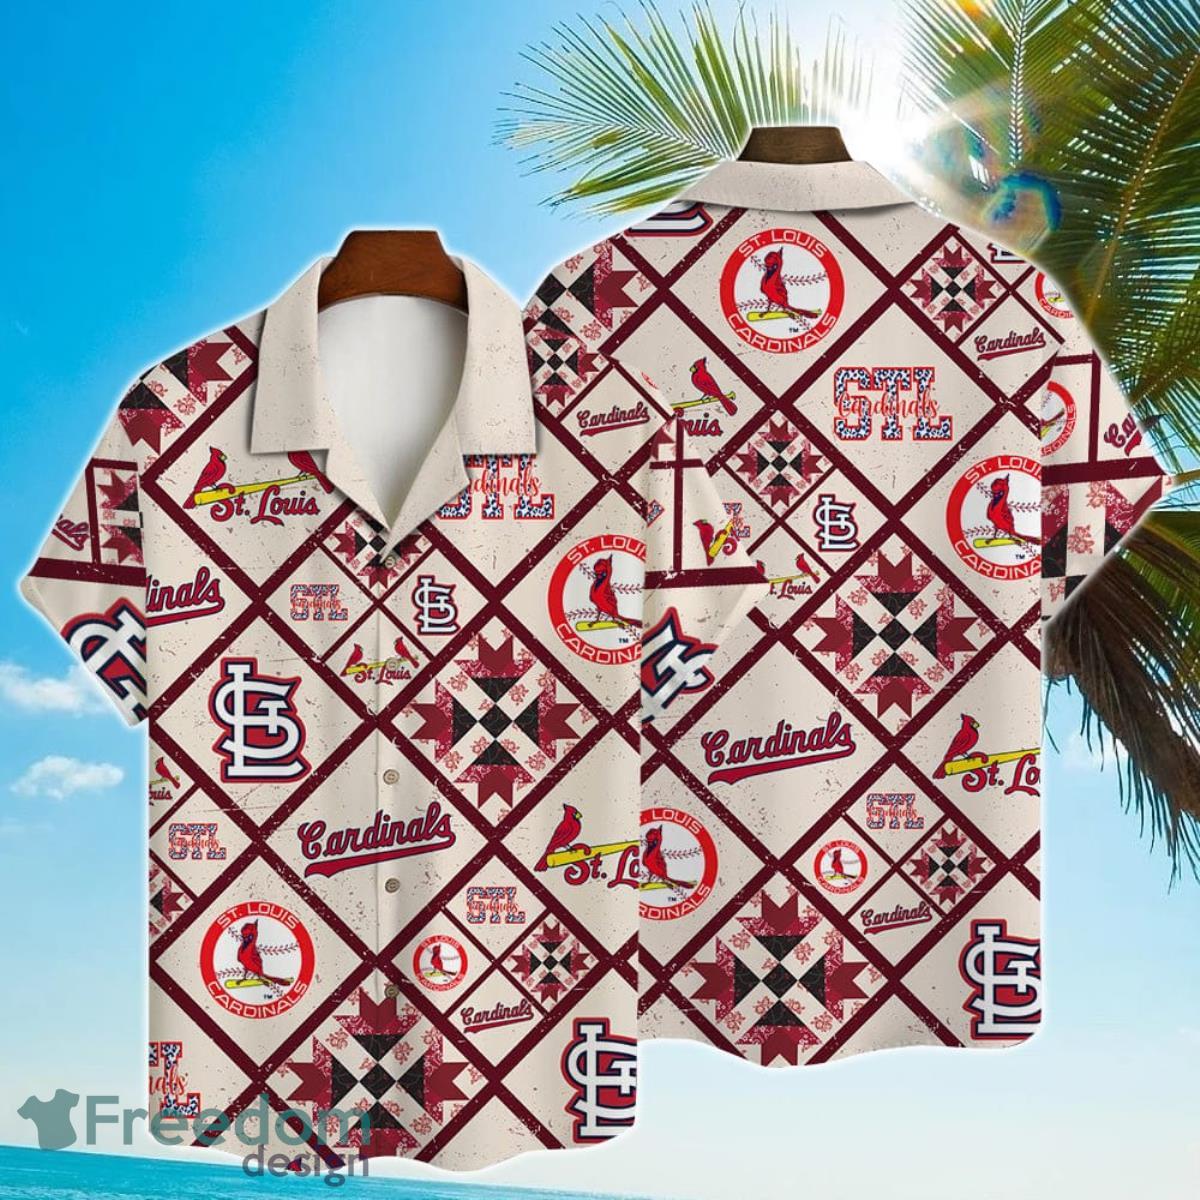 St. Louis Cardinals Major League Baseball Hawaiian Shirt For Men Women